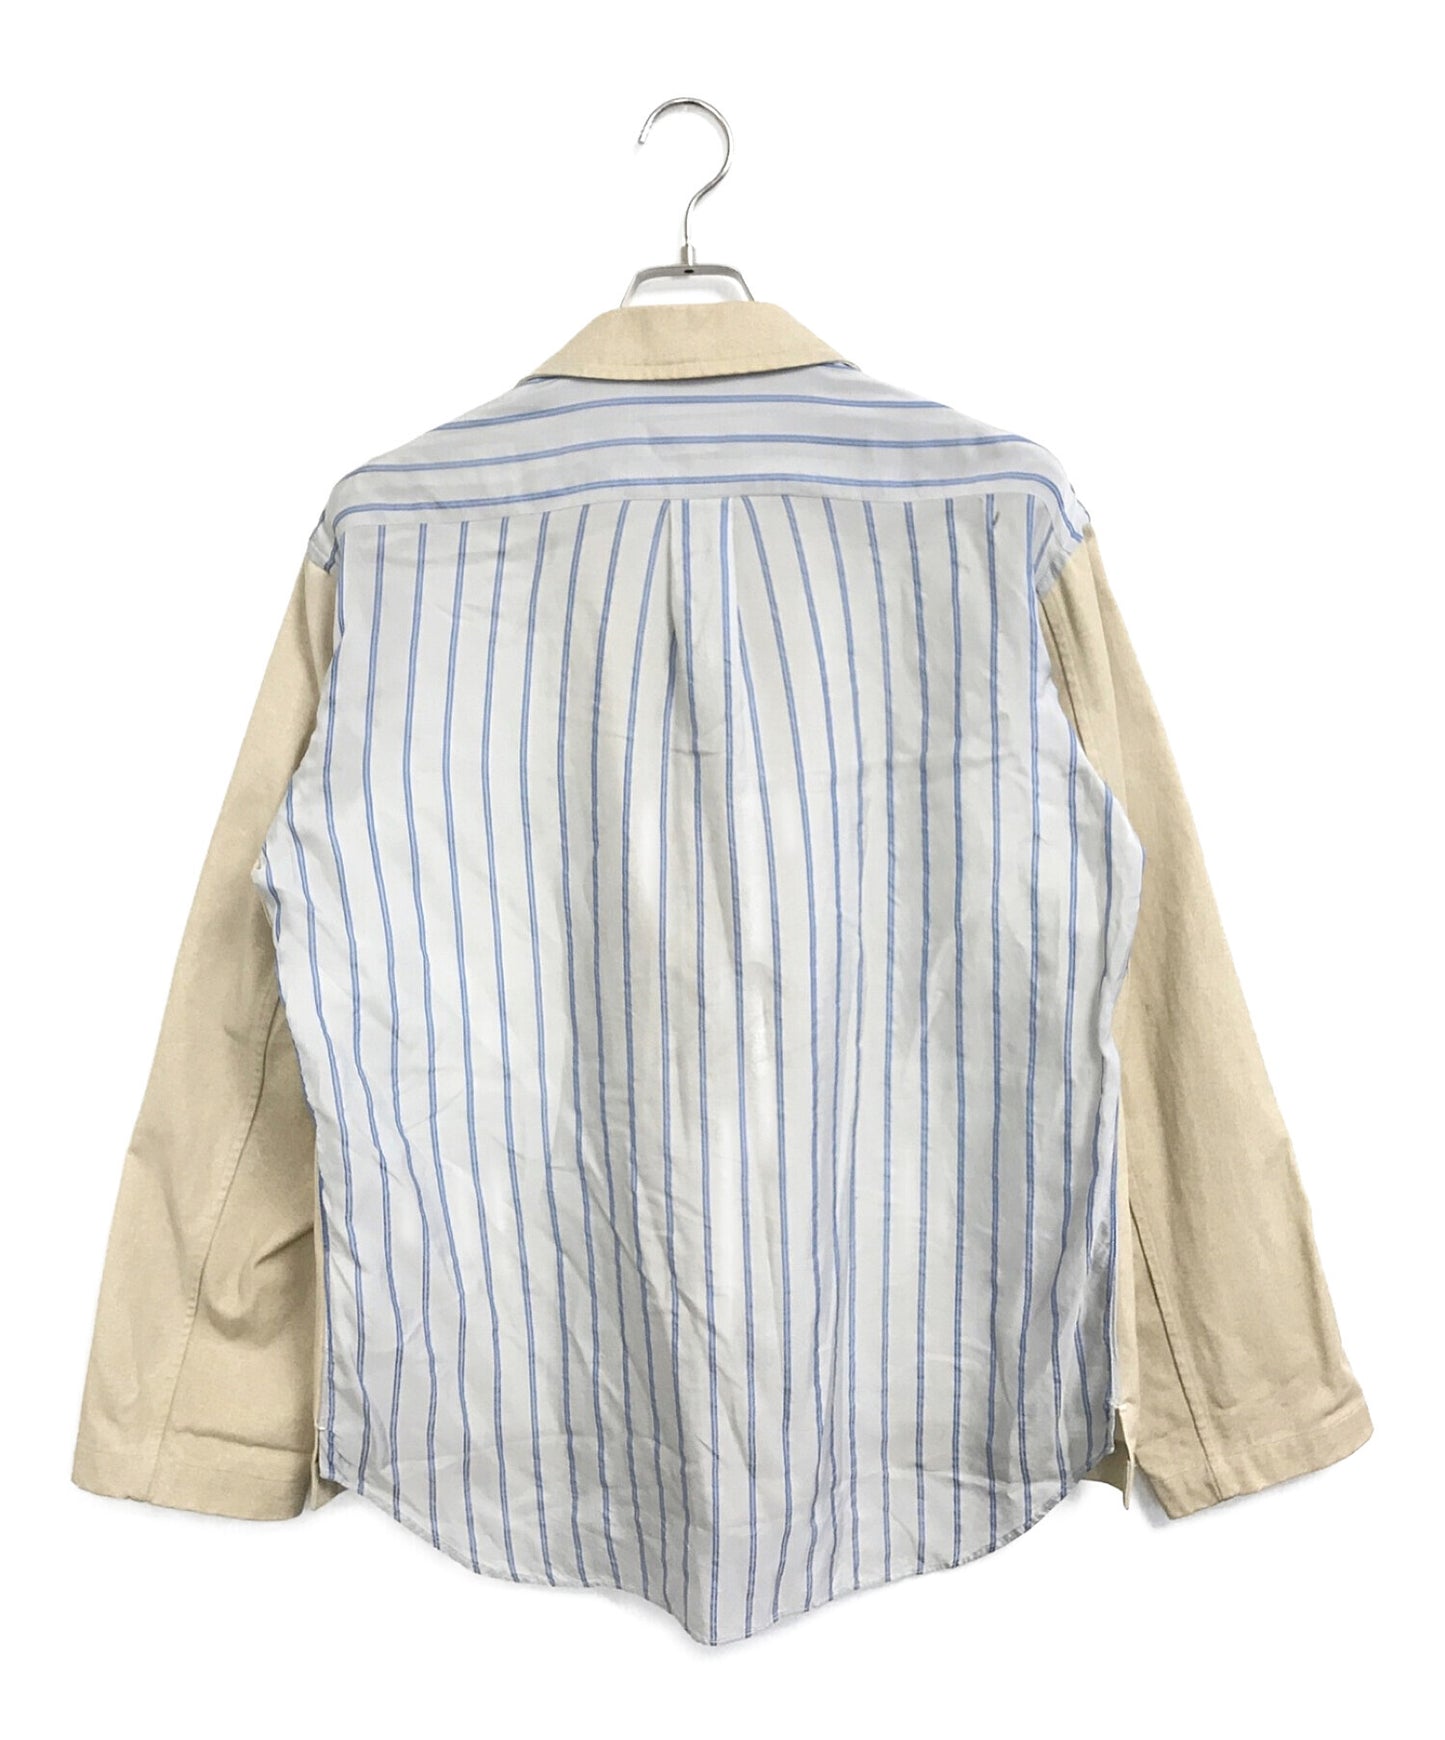 Comme des Garcons衬衫量身定制的外套S10169